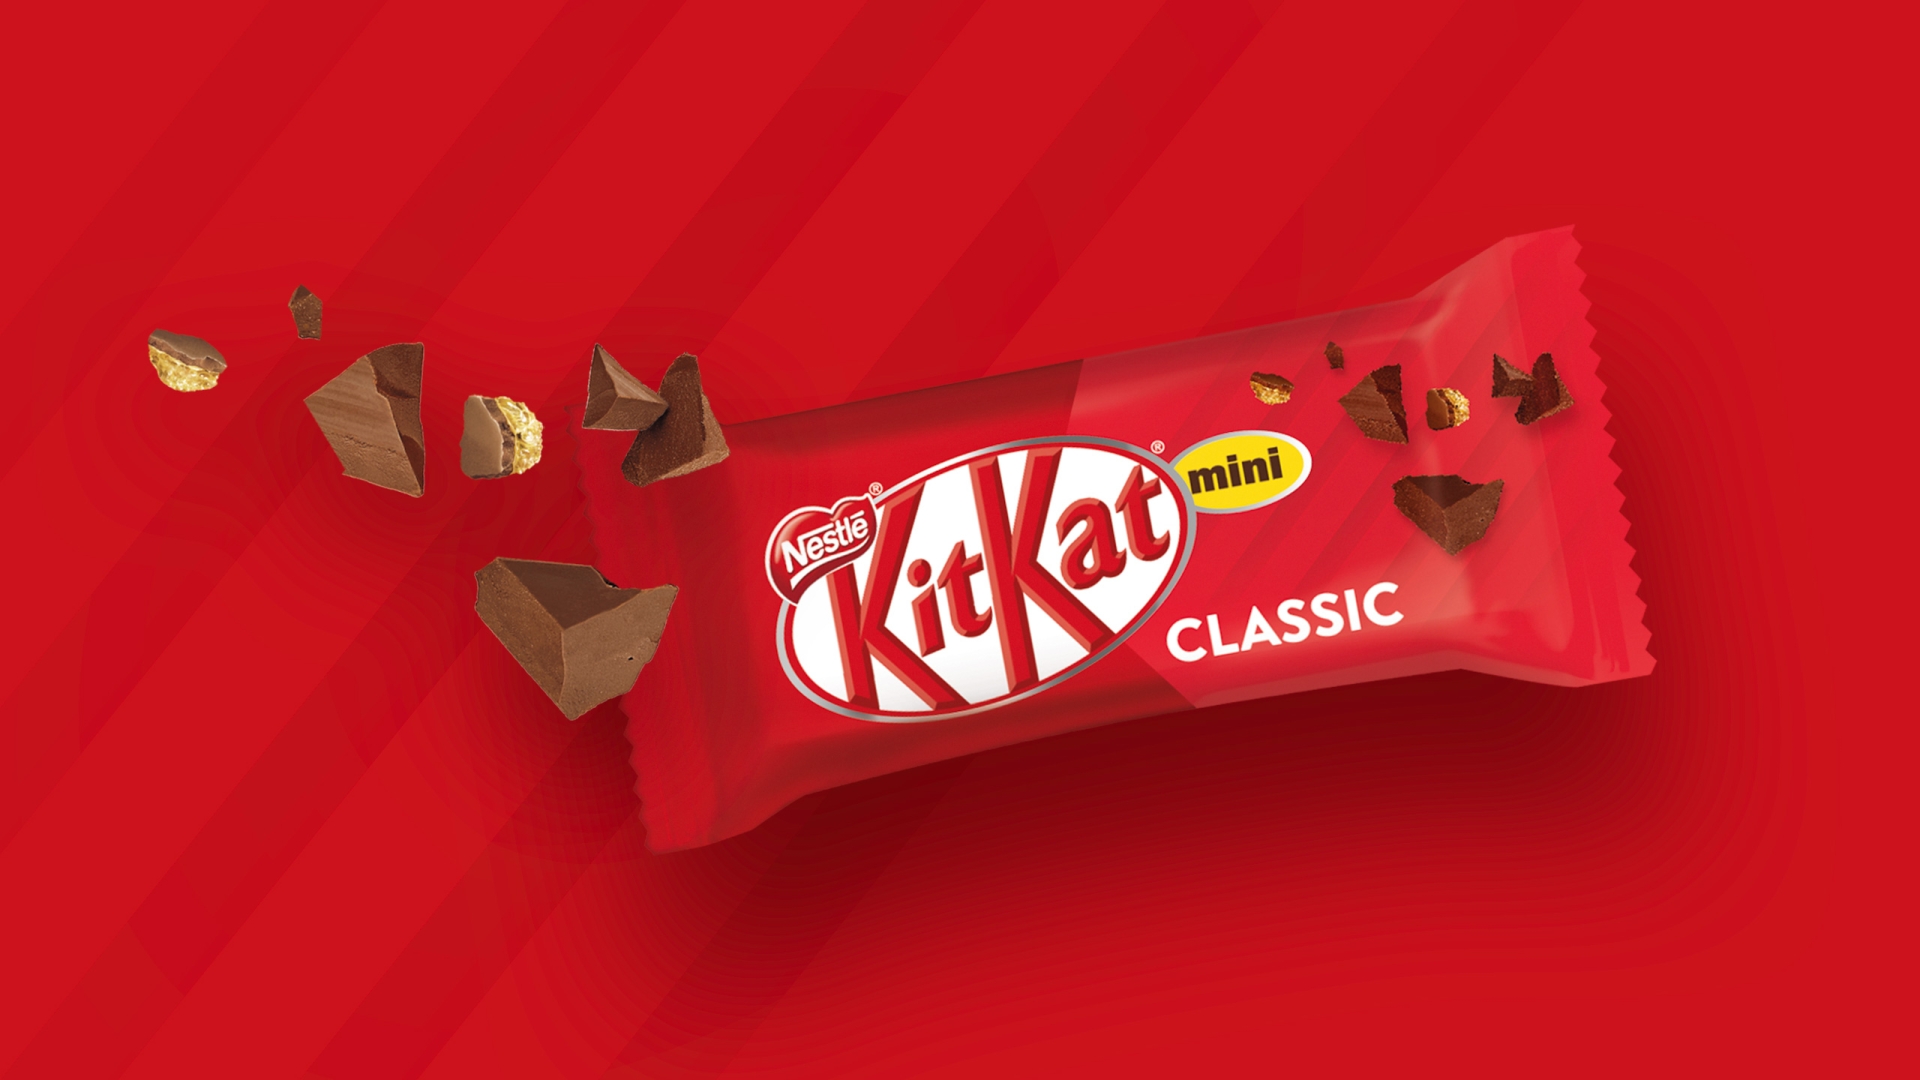 KitKat Mini Mix Classic